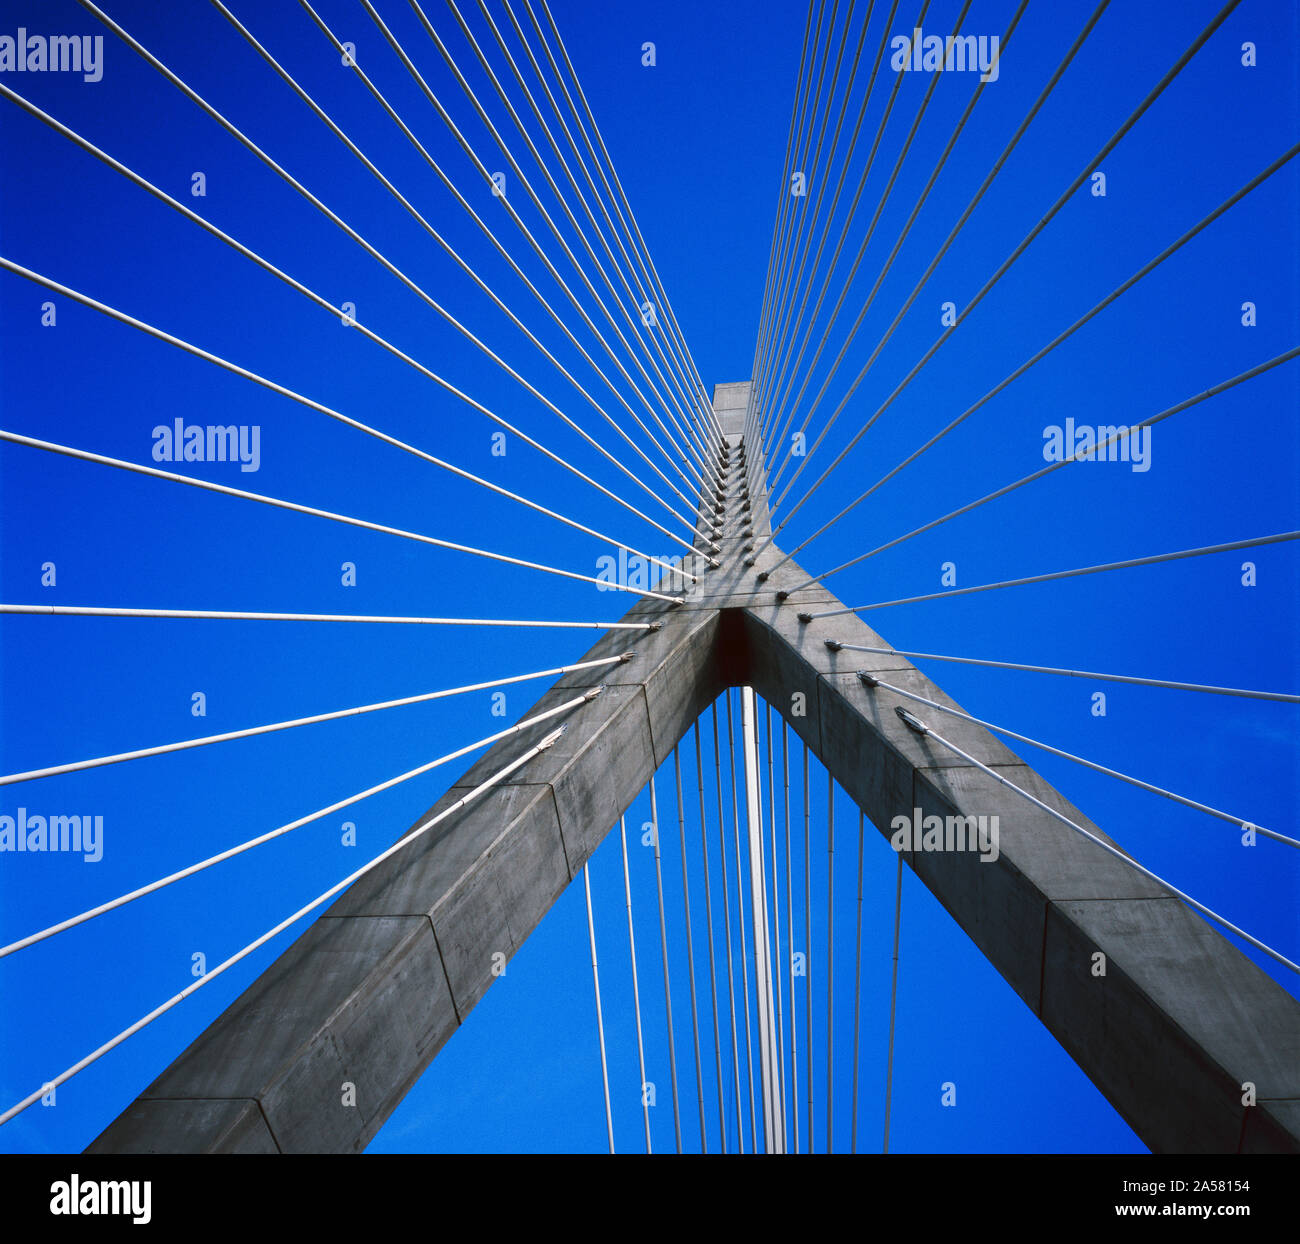 Architecture of Zakim bridge, Boston, Massachusetts, USA Stock Photo